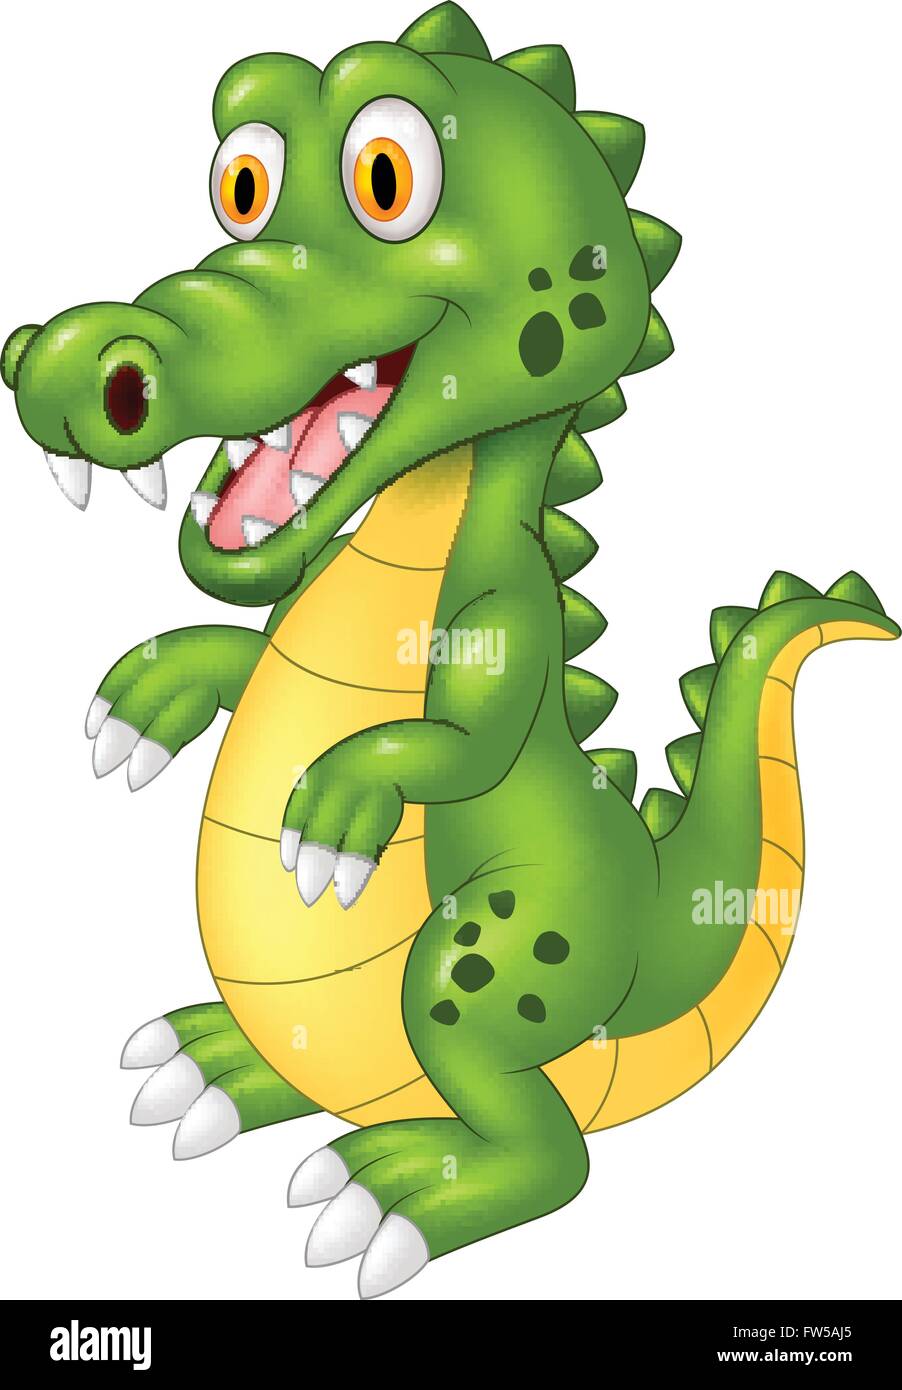 Cartoon happy crocodile Stock Vector